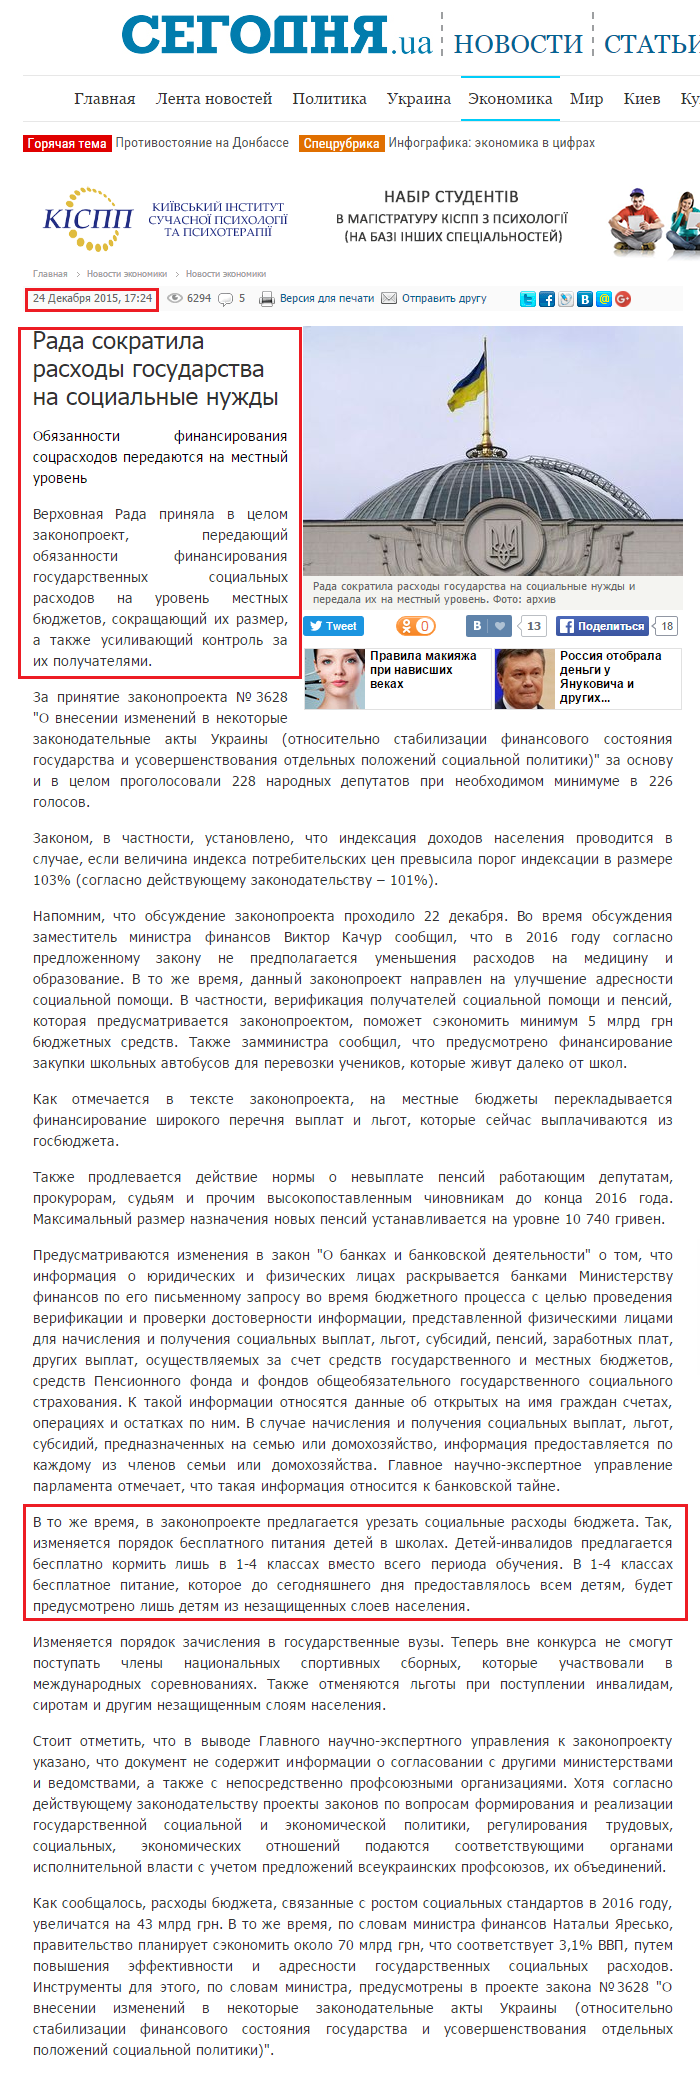 http://www.segodnya.ua/economics/enews/rada-sokratila-rashody-gosudarstva-na-socialnye-nuzhdy-678200.html